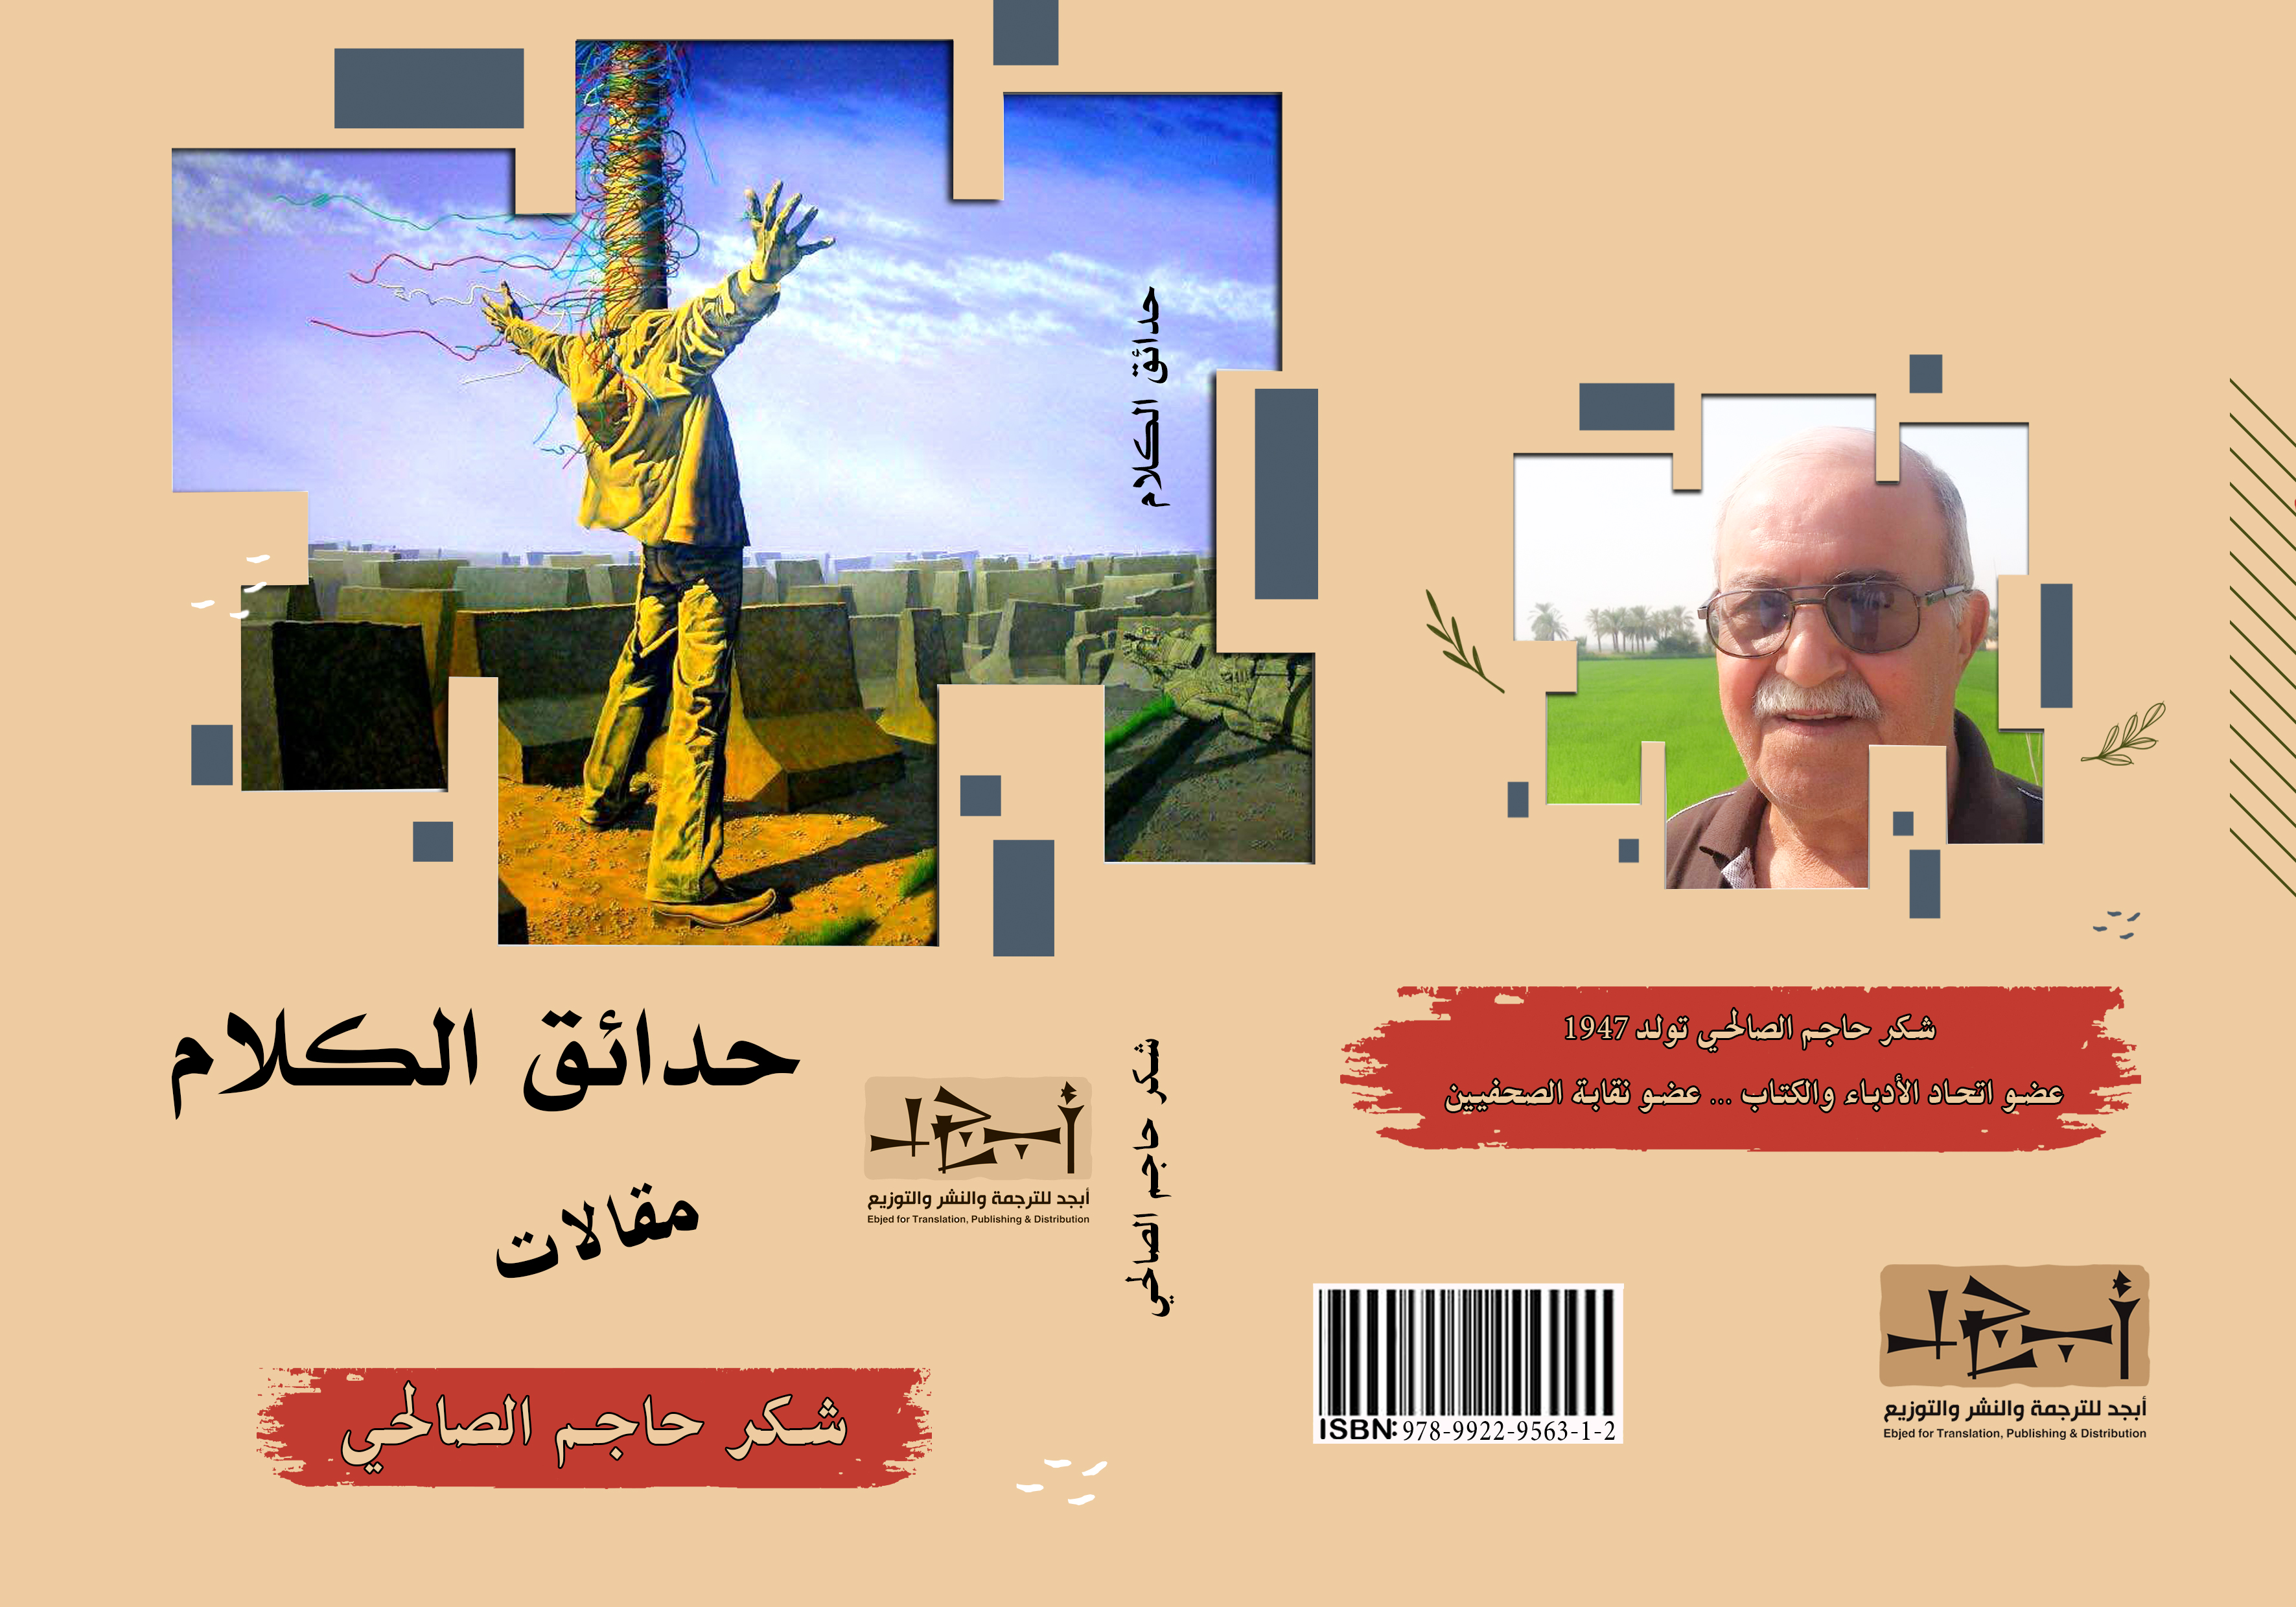 كتاب (حدائق الكلام) - الكاتب شكر حاجم الصالحي 